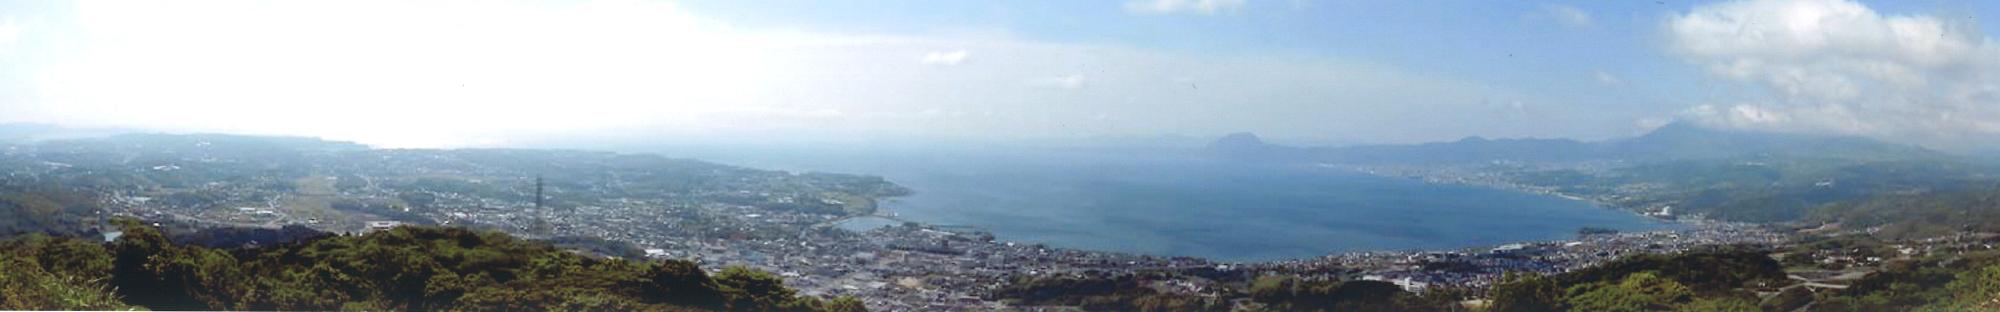 城山から海を望む風景のパノラマ画像